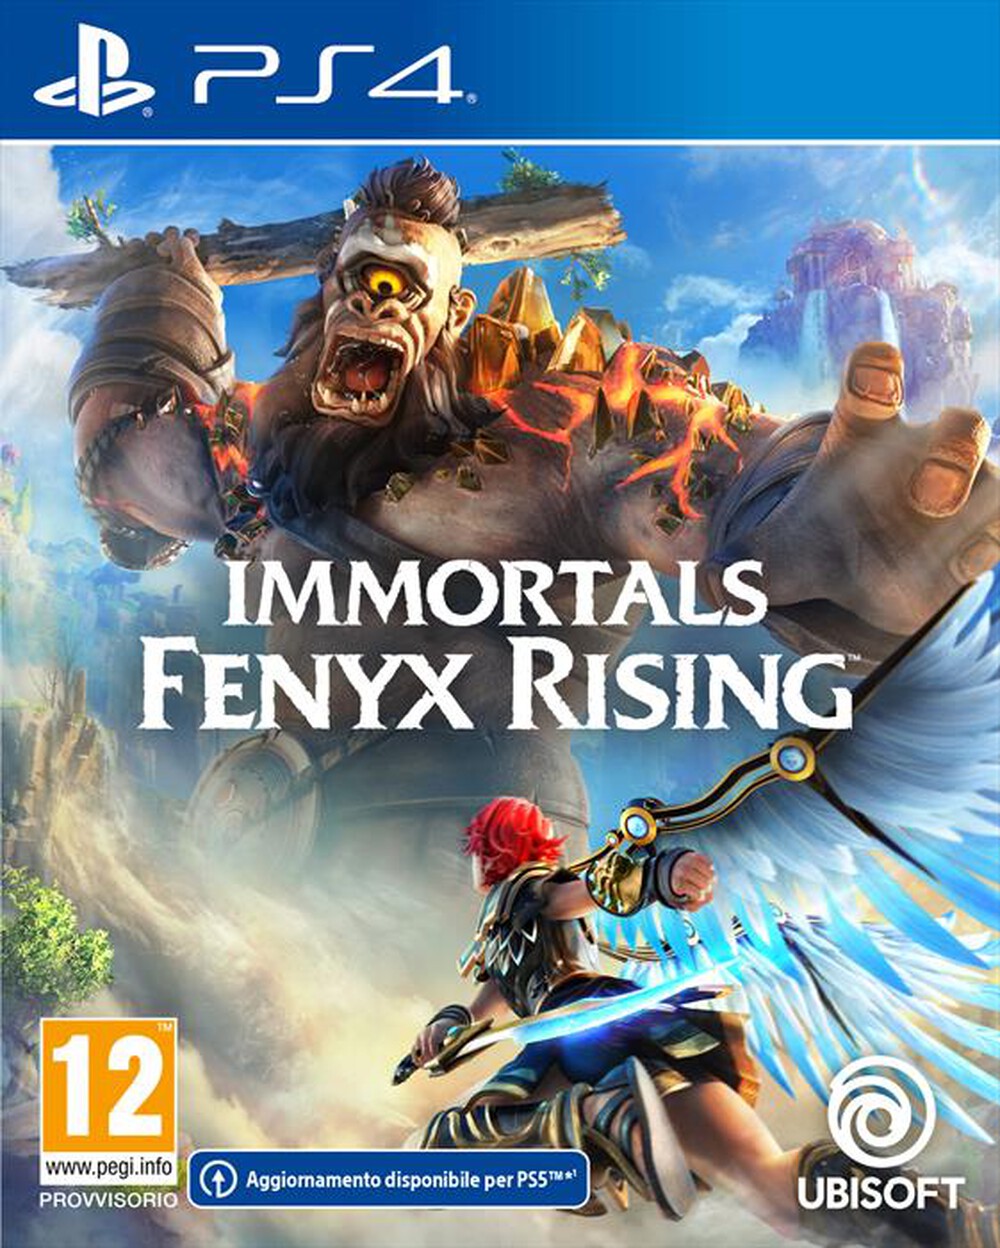 "UBISOFT - IMMORTALS FENYX RISING PS4"